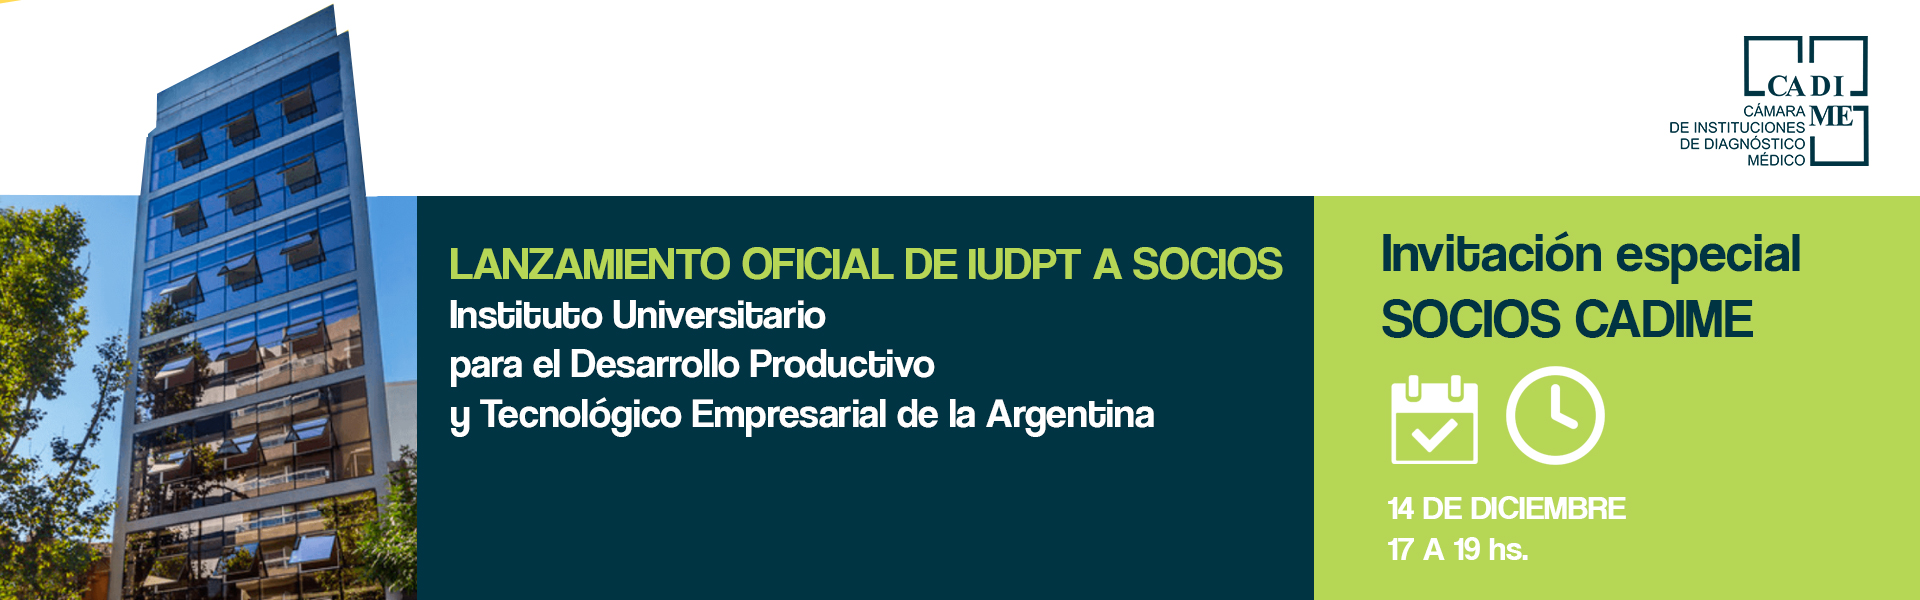 Lanzamiento oficial del Instituto Universitario IUDPT a socios Cadime.